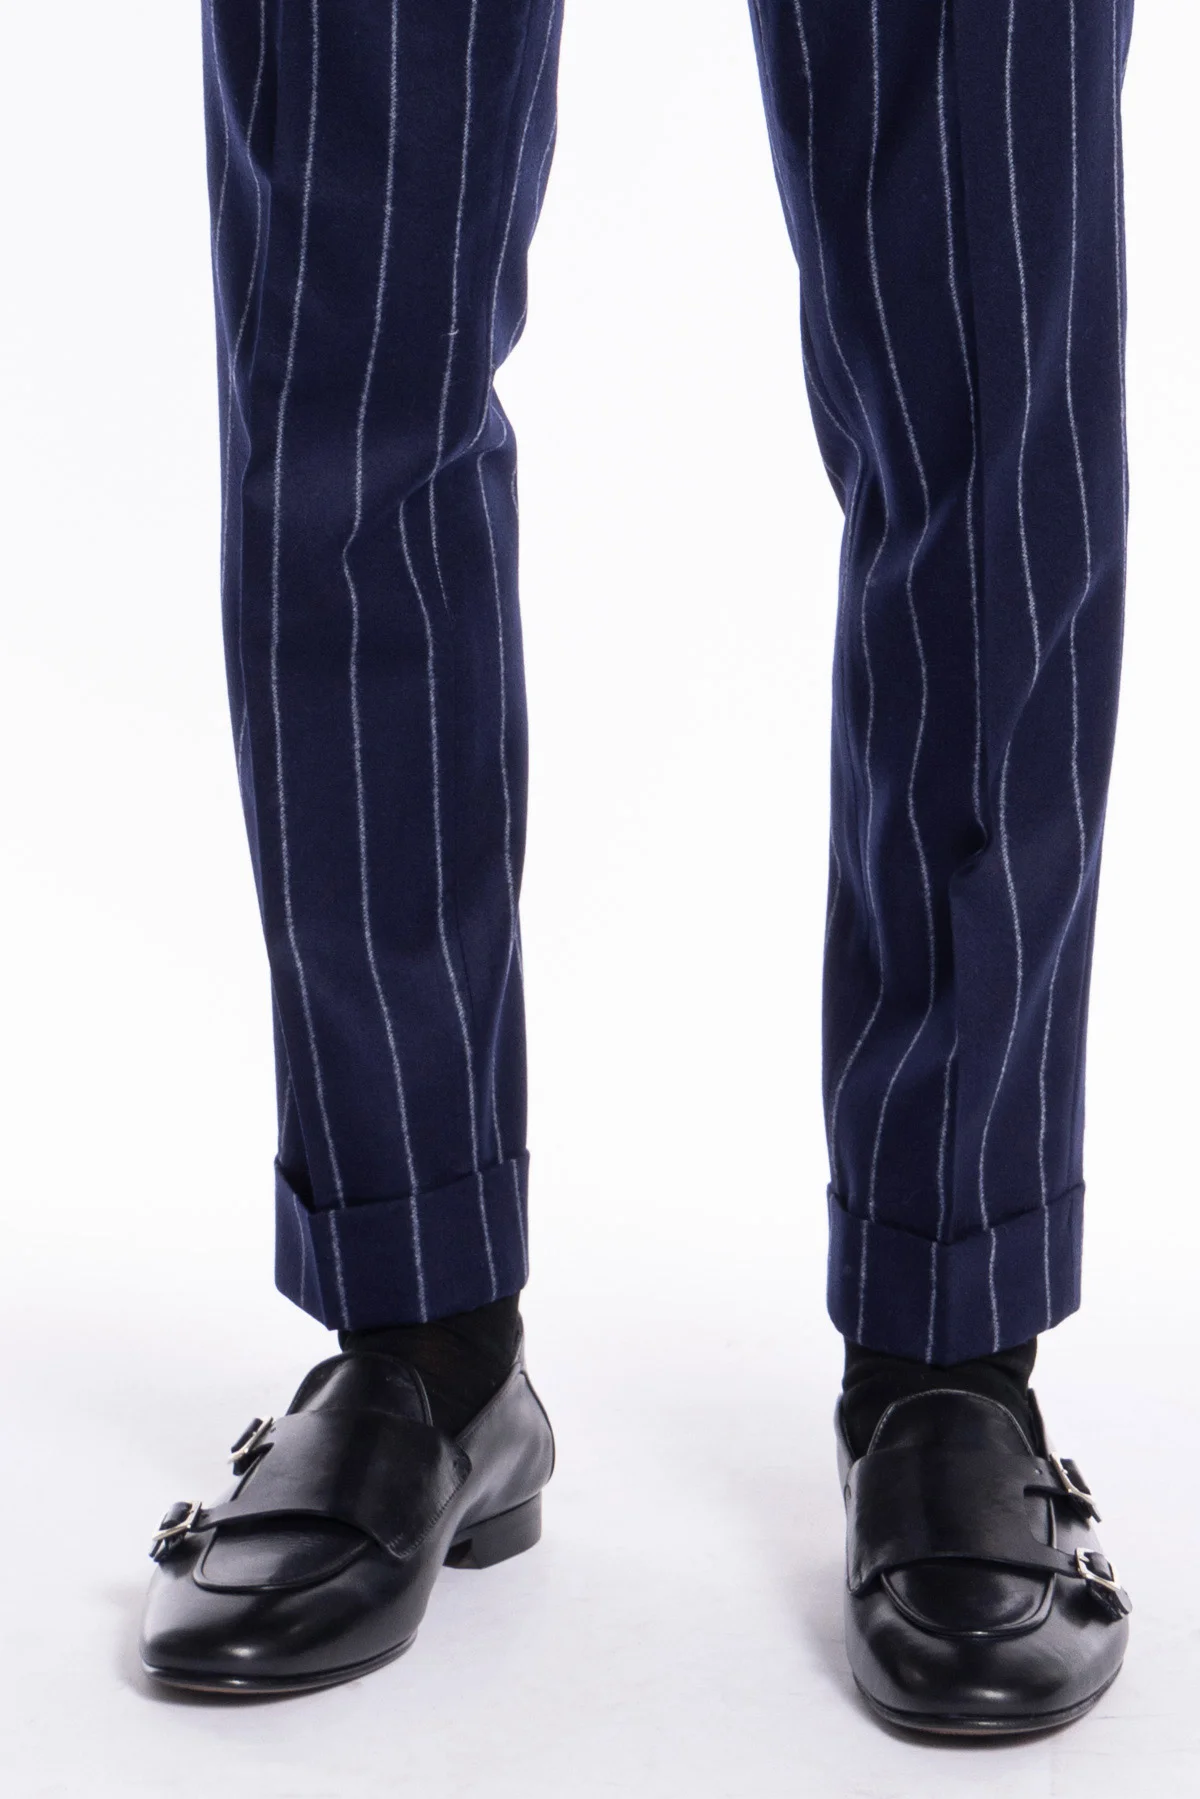 Pantalone uomo blu gessato vita alta tasca america in lana flanella Vitale  Barberis Canonico con doppia pinces e fibbie laterali regolabili - Carillo  Moda